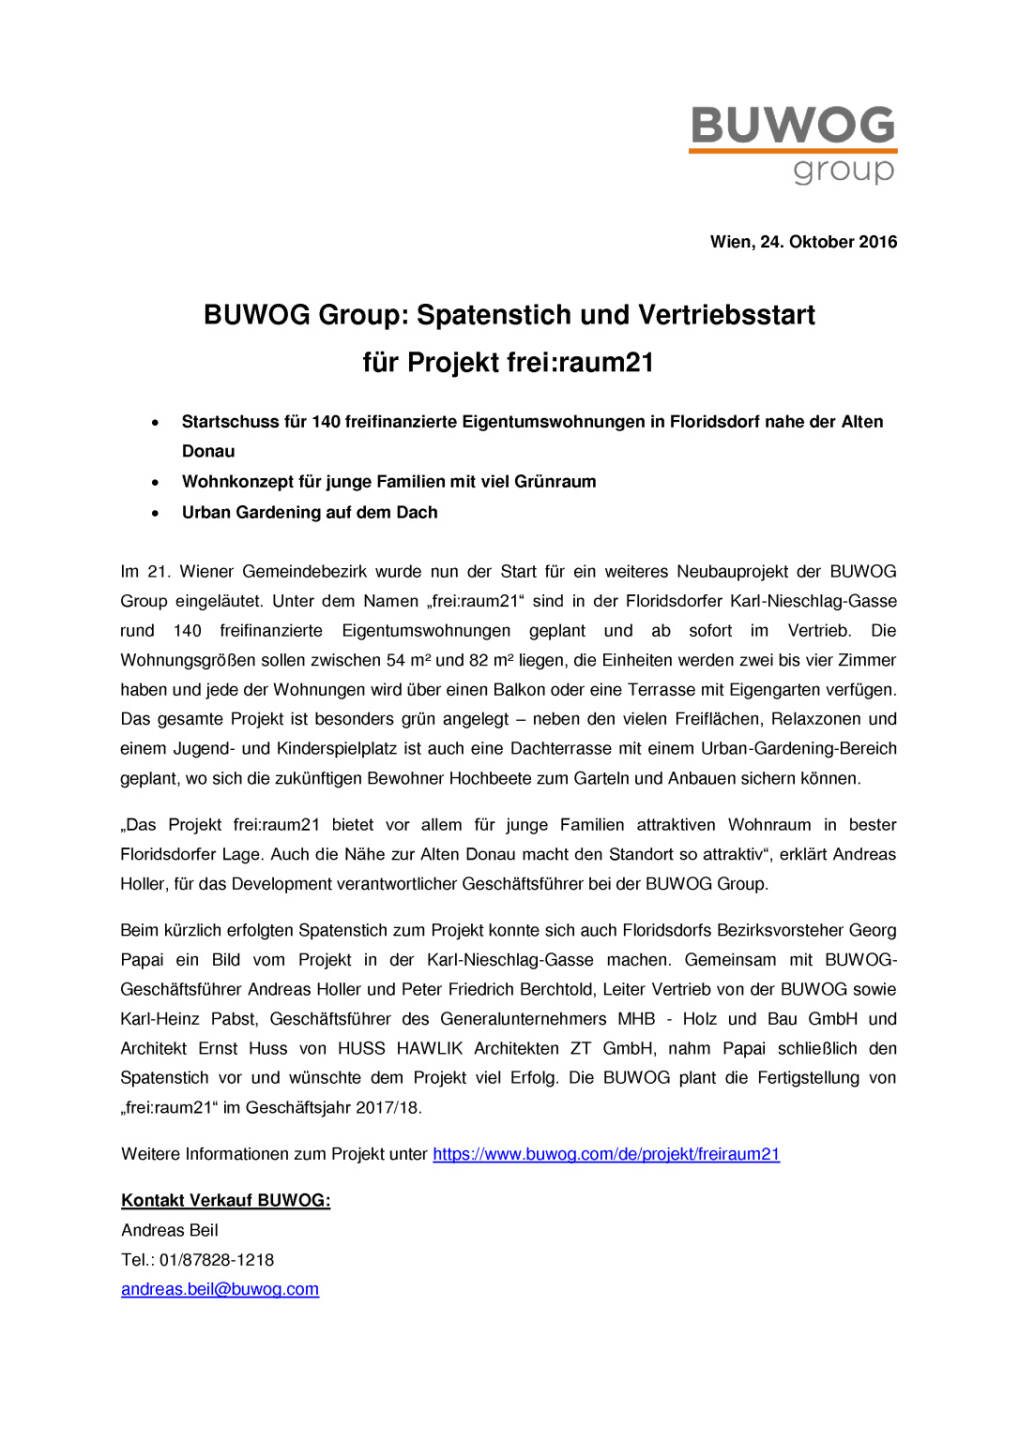 Buwog Group: Spatenstich und Vertriebsstart Karl-Nieschlag-Gasse, Seite 1/2, komplettes Dokument unter http://boerse-social.com/static/uploads/file_1925_buwog_group_spatenstich_und_vertriebsstart_karl-nieschlag-gasse.pdf